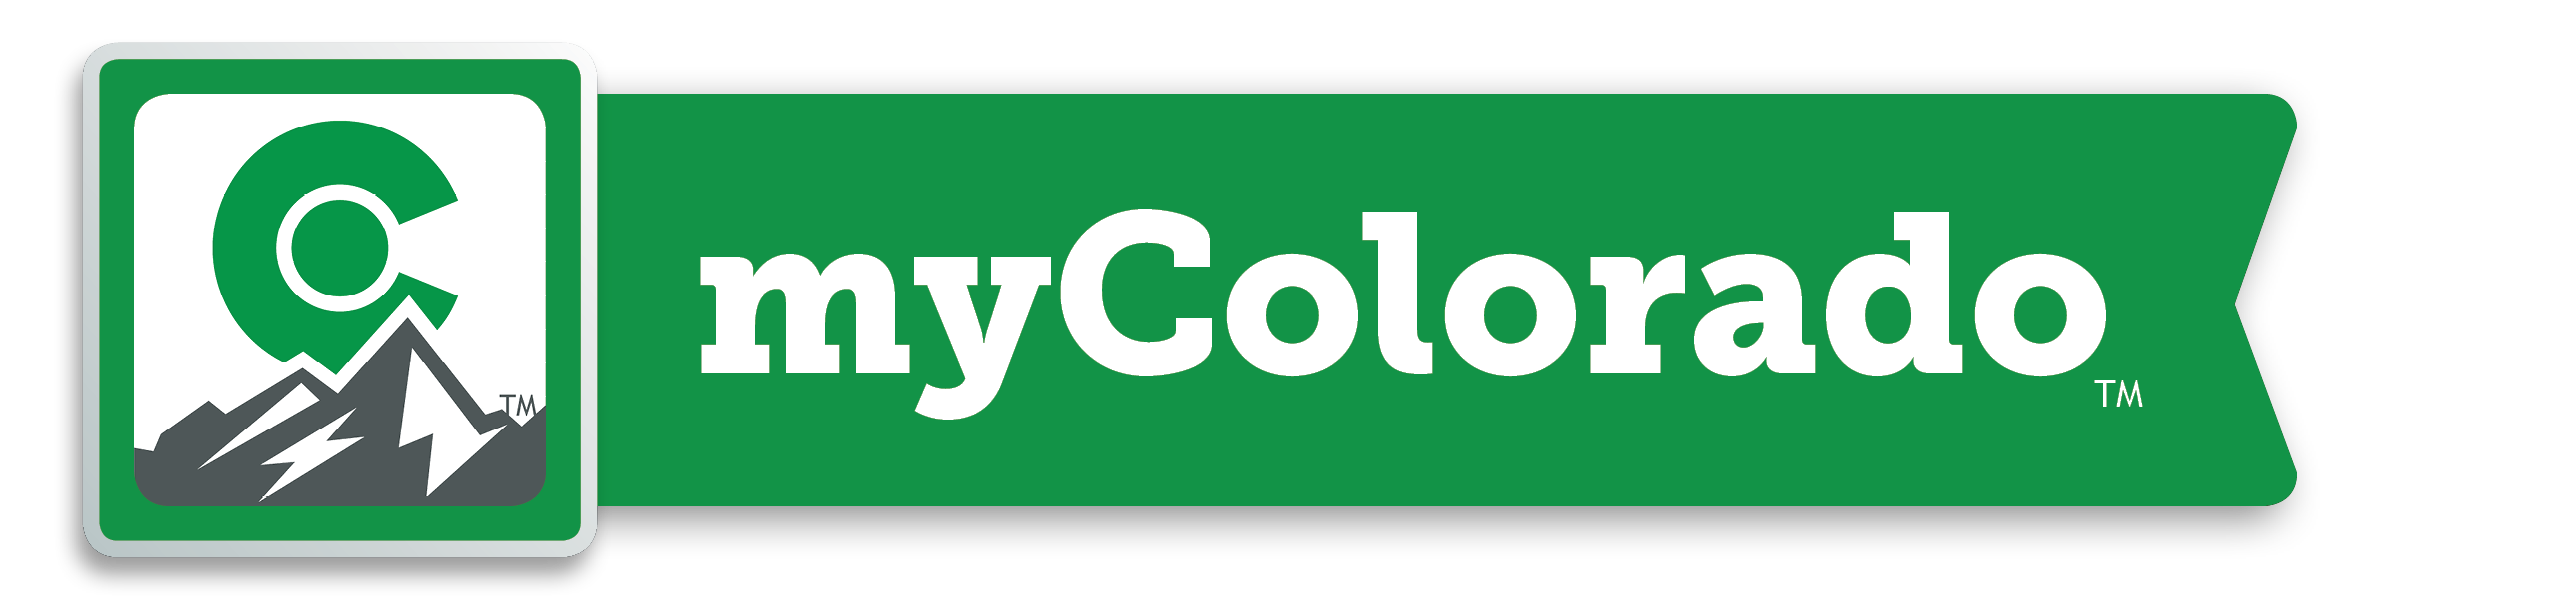 green logo with mountain for the myColorado application